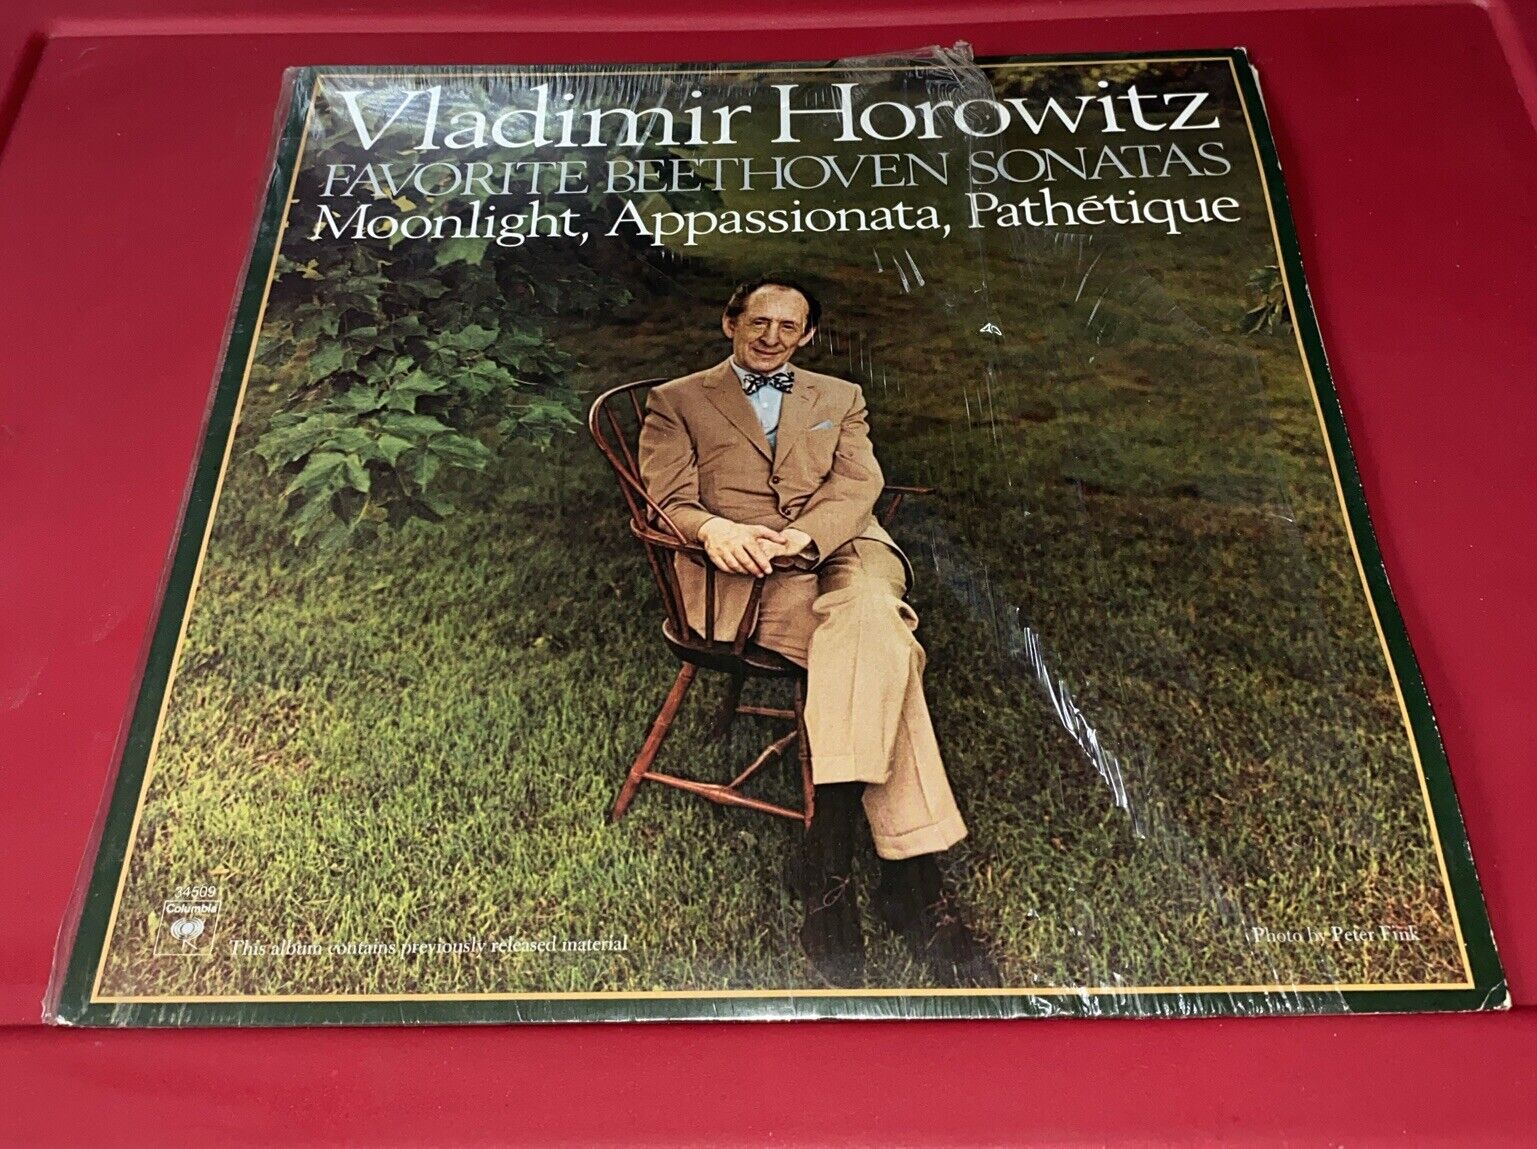 Vladimir Horowitz Favorite Beethoven Sonatas VG++ MASTERWORKS LP